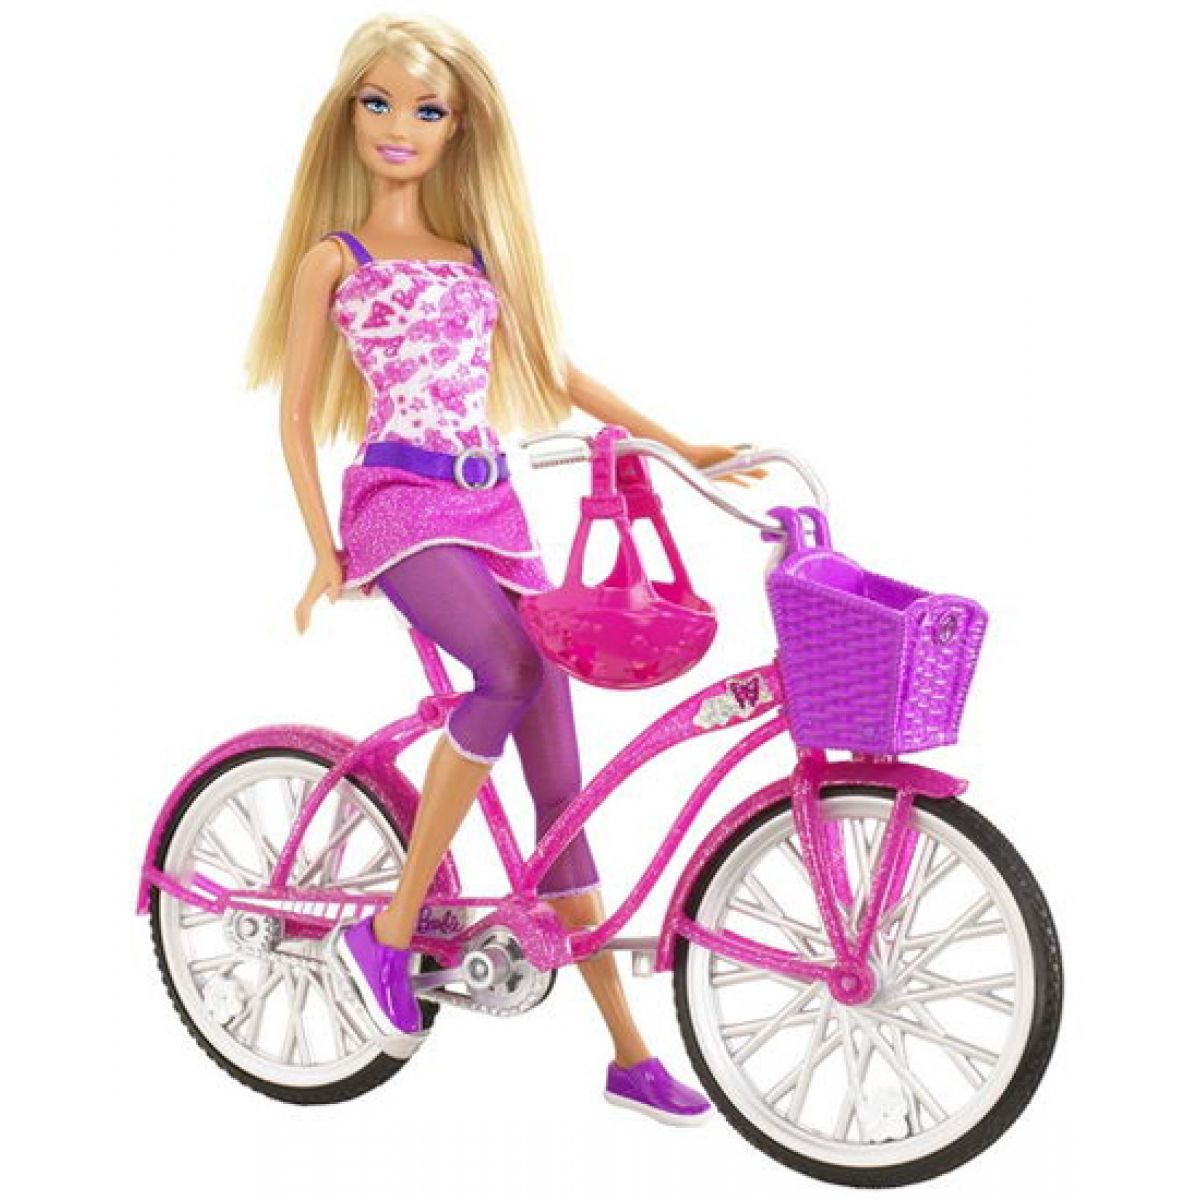 Barbie T2332 - Barbie na kole